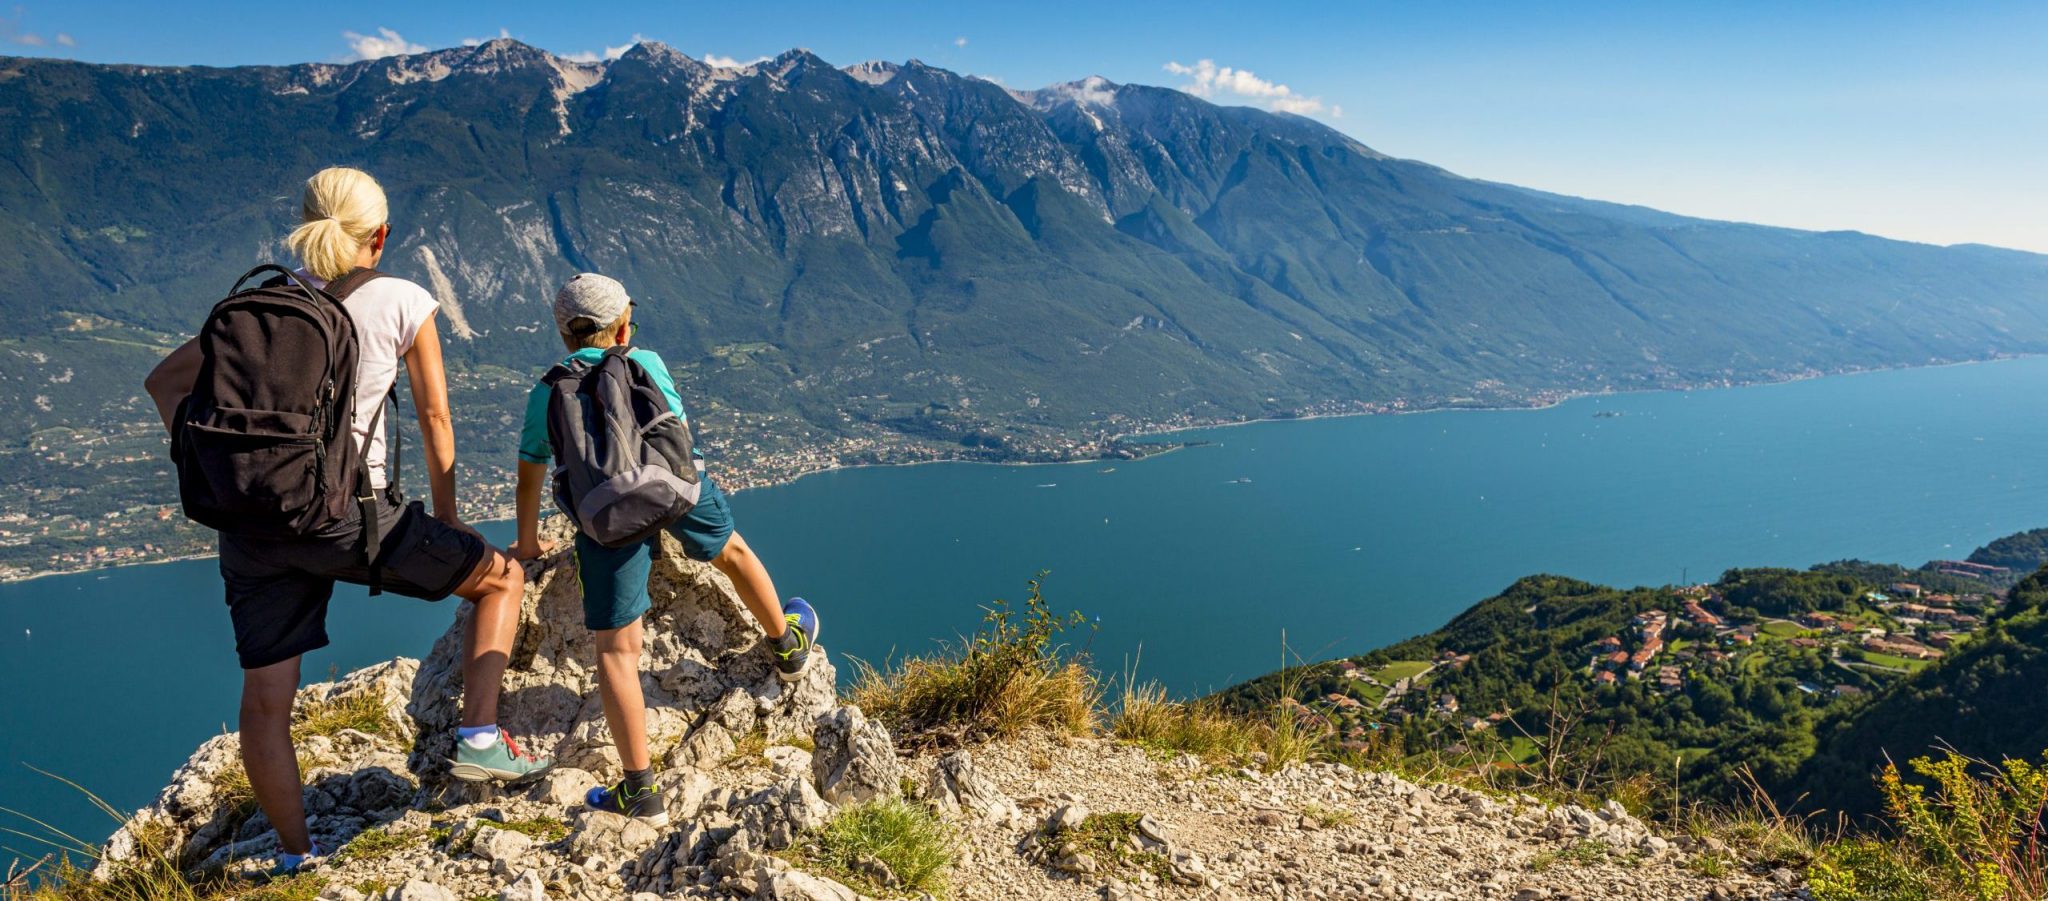 Explora el monte Baldo: un paraíso para los amantes de la naturaleza con vistas al lago de Garda